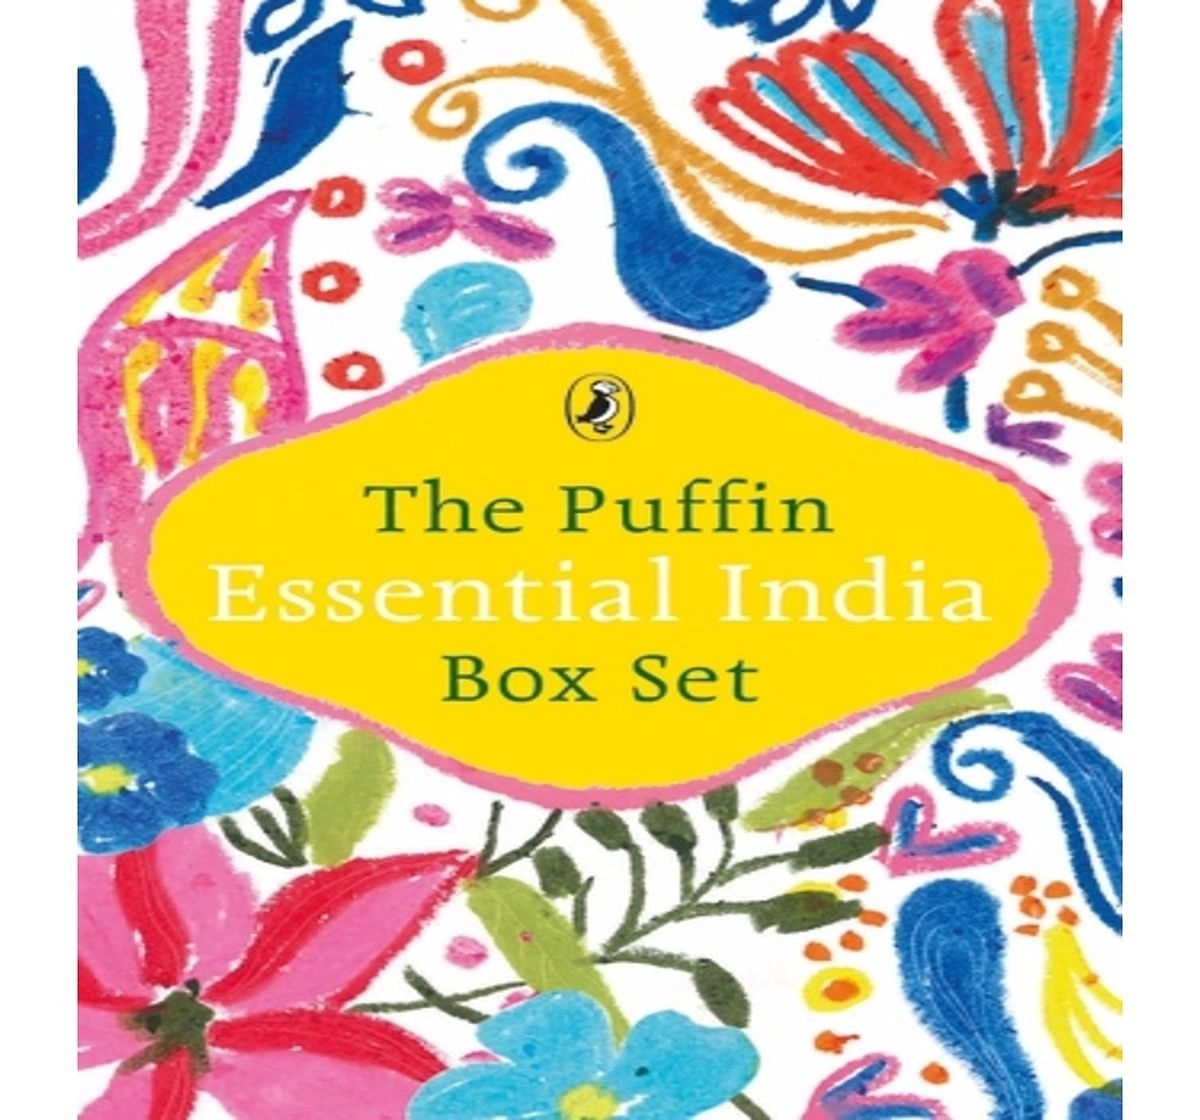 Puffin Essentials India, The (Box Set), Book by Kalam,APJ Abdul; Sanyal,Sanjeev; Dalal,R, Paperback